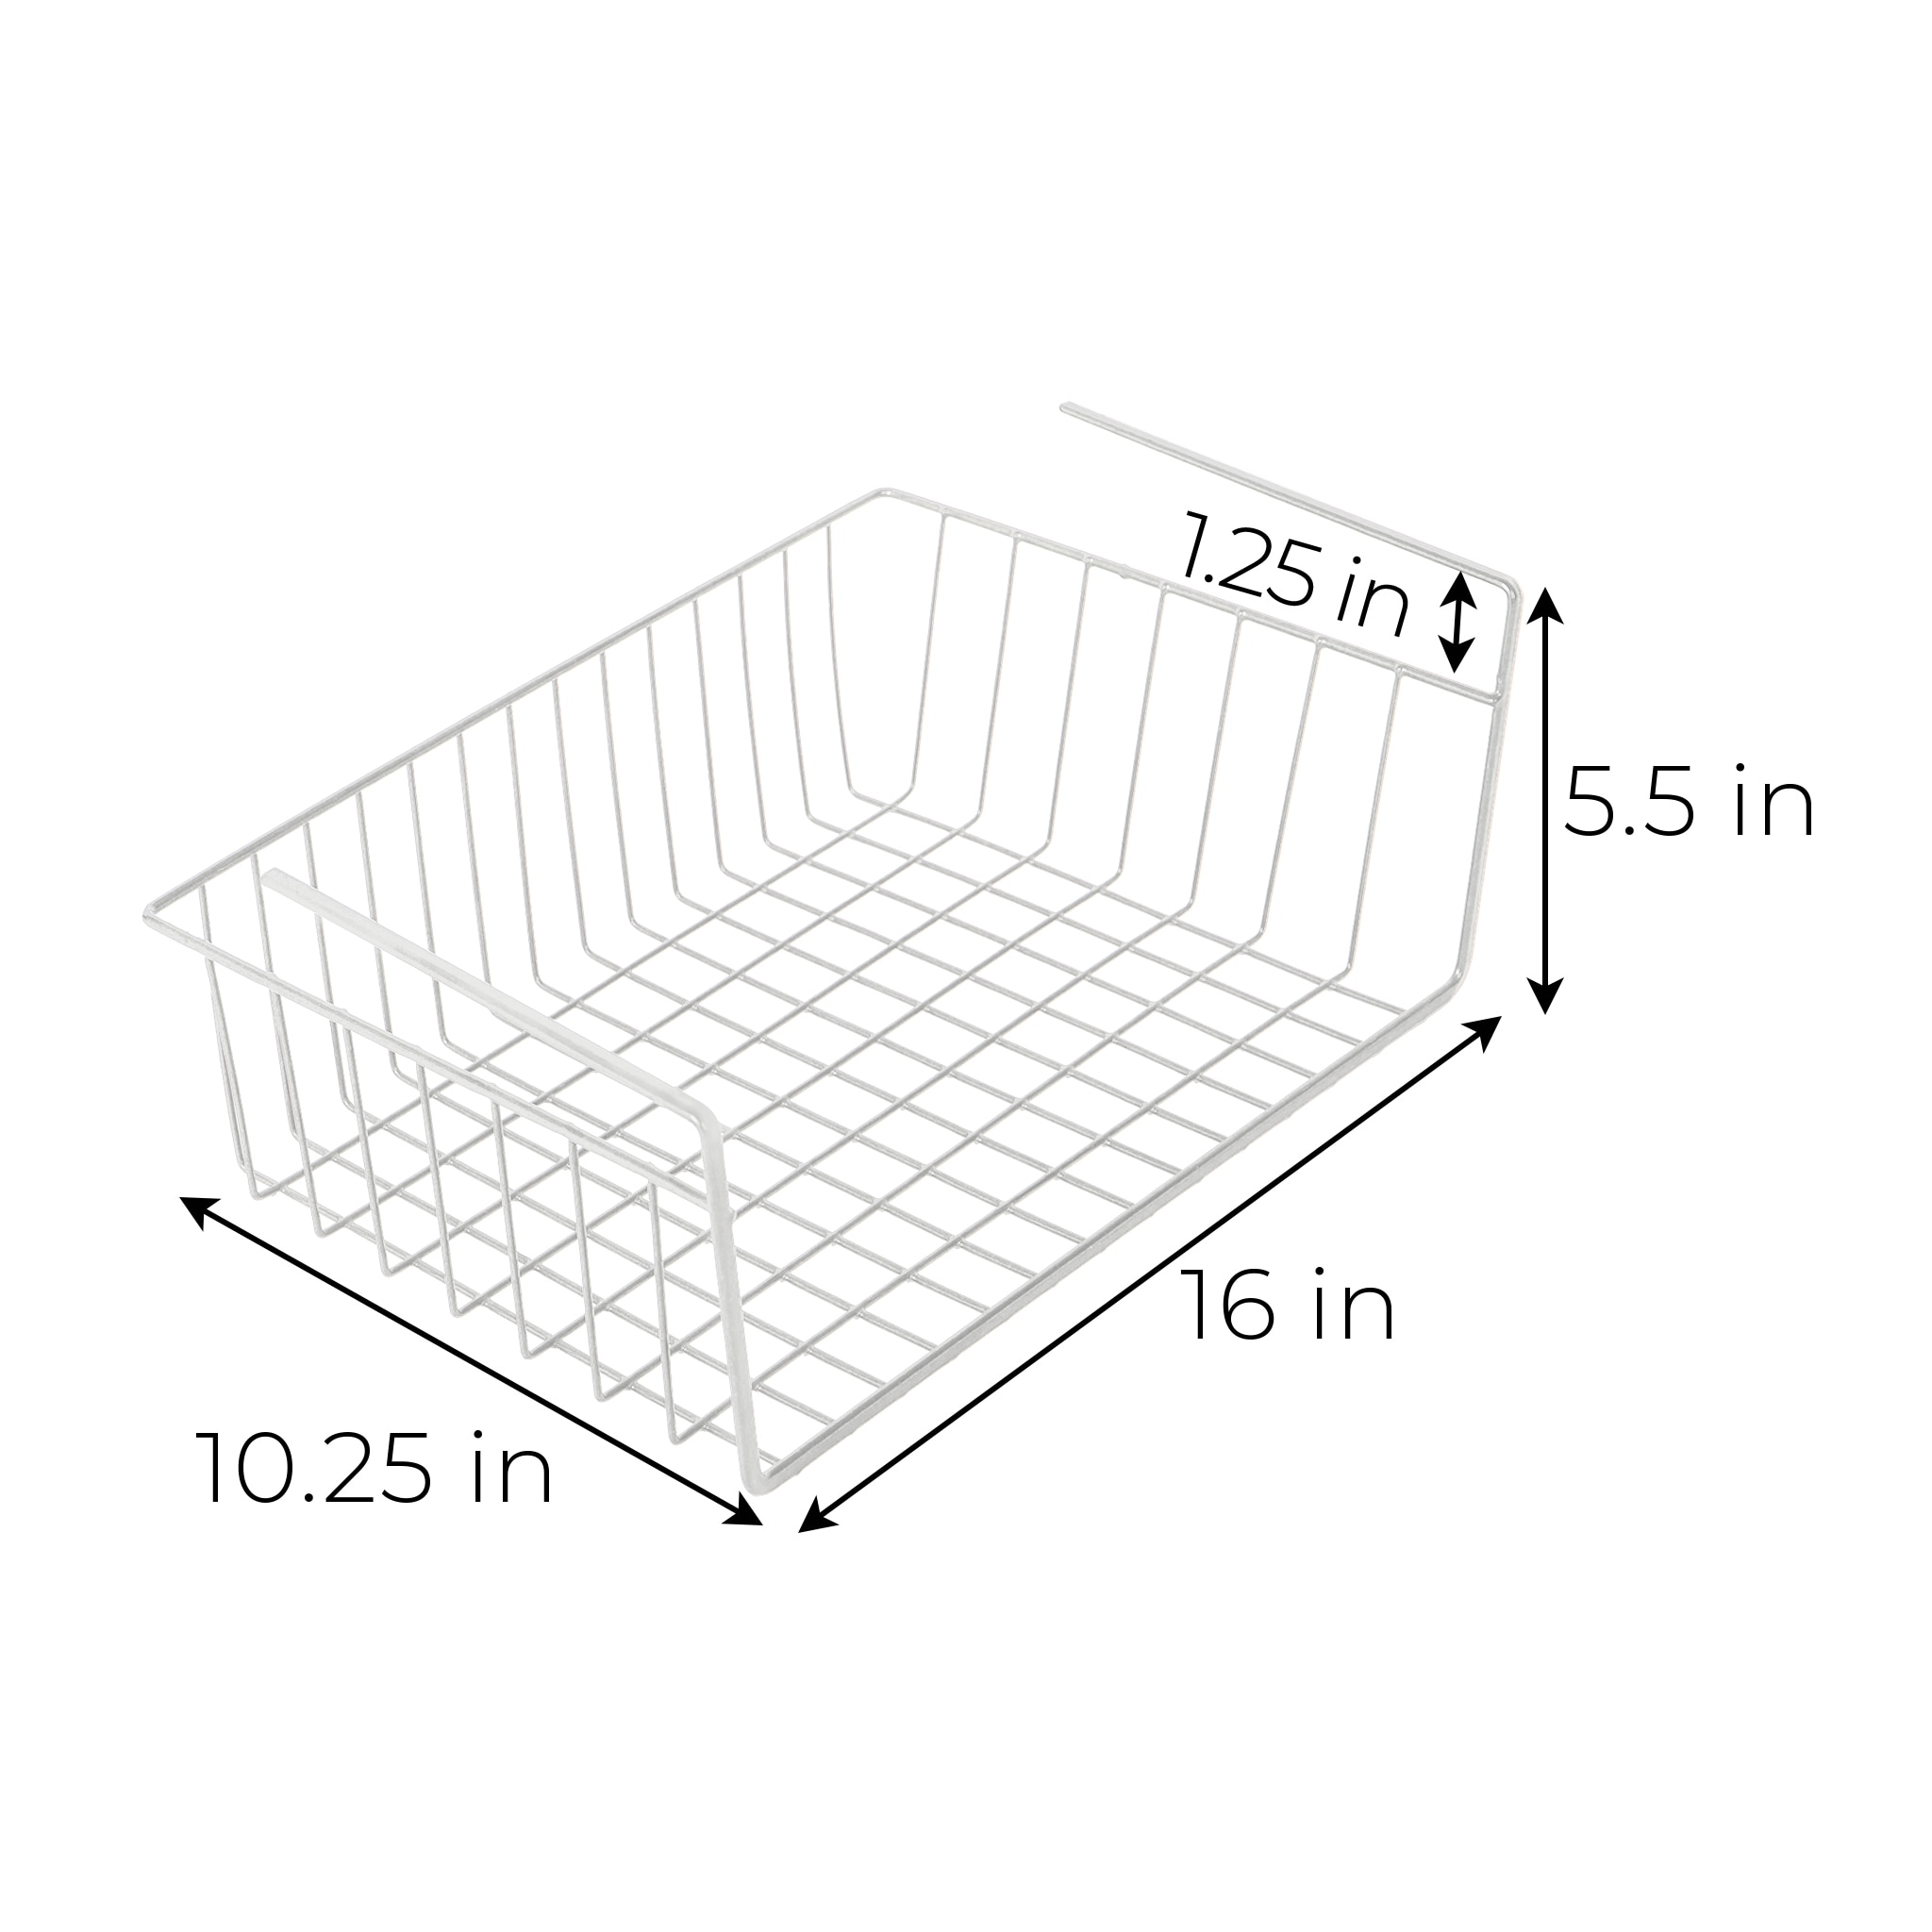 Smart Design Undershelf Storage Basket - Small - 12 x 5.5 inch - White 